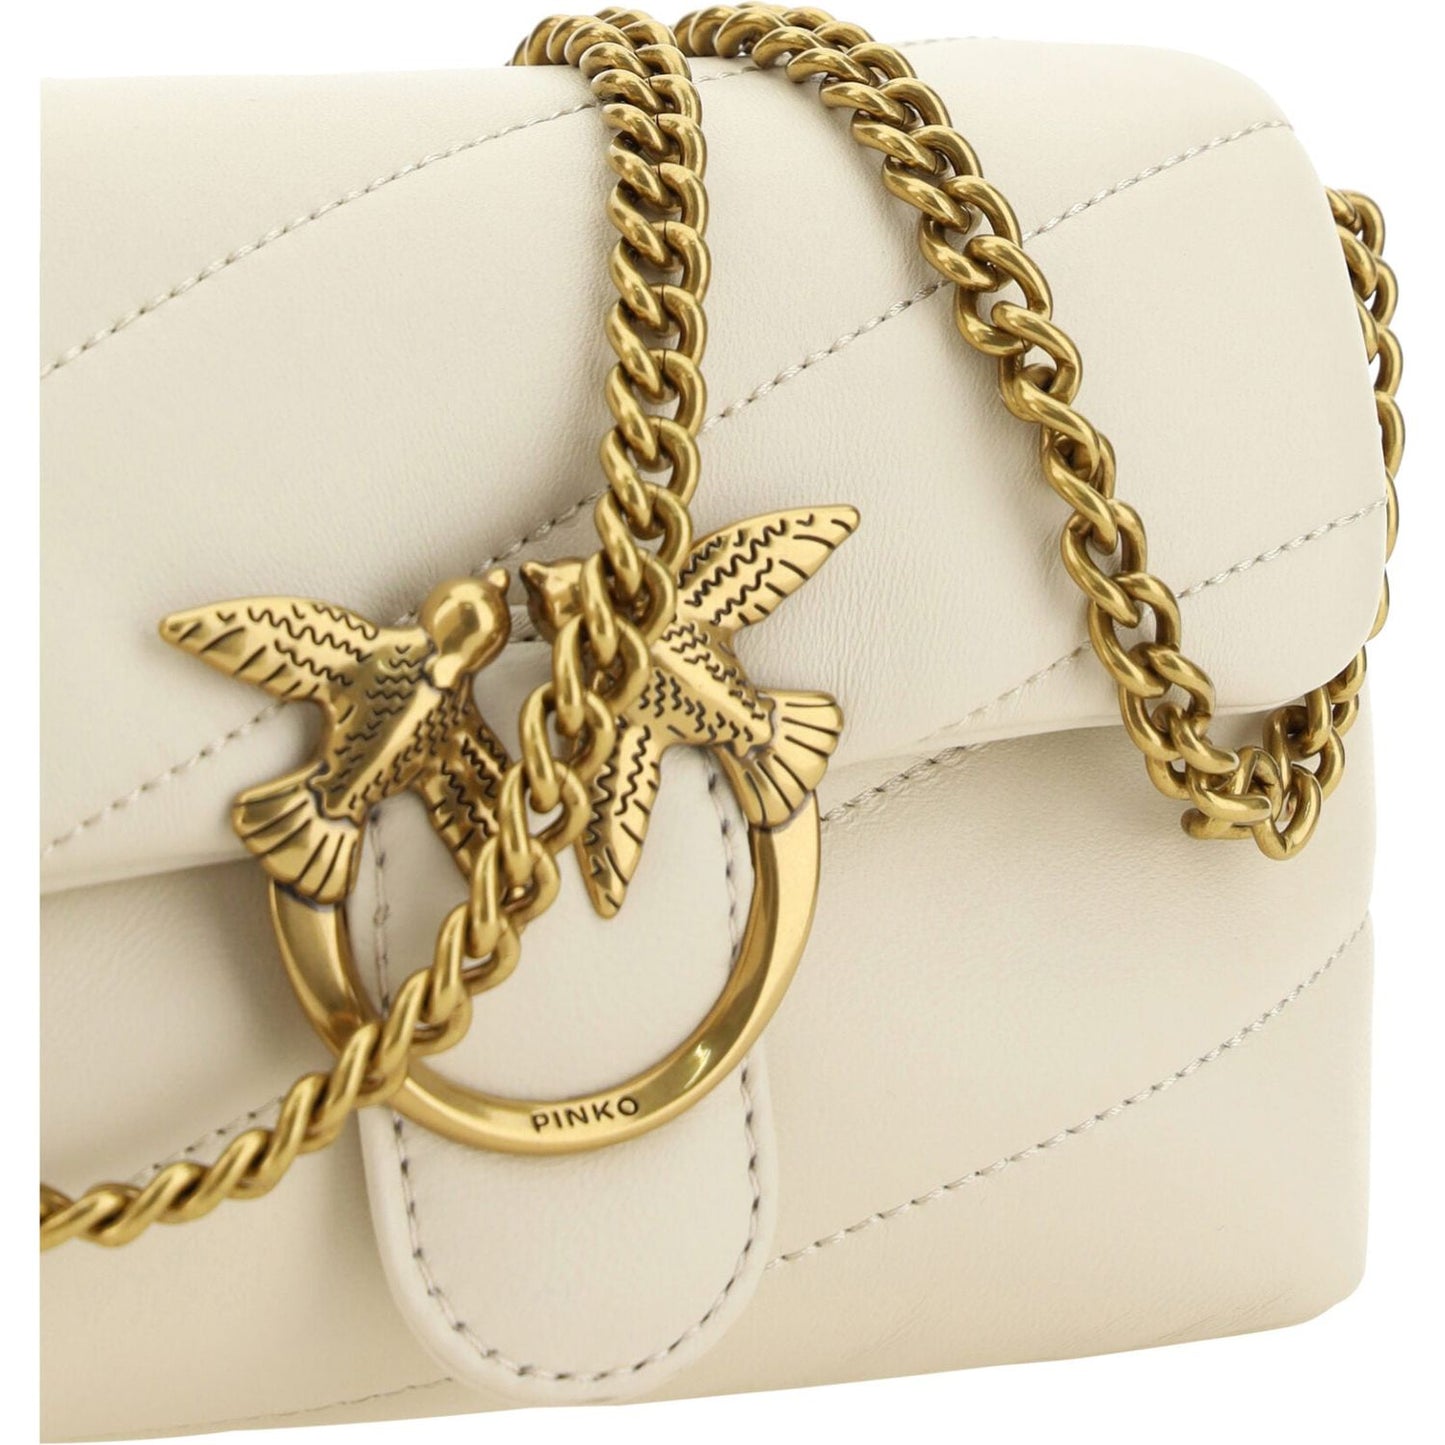 PINKO | Elegant White Quilted Leather Shoulder Bag| McRichard Designer Brands   